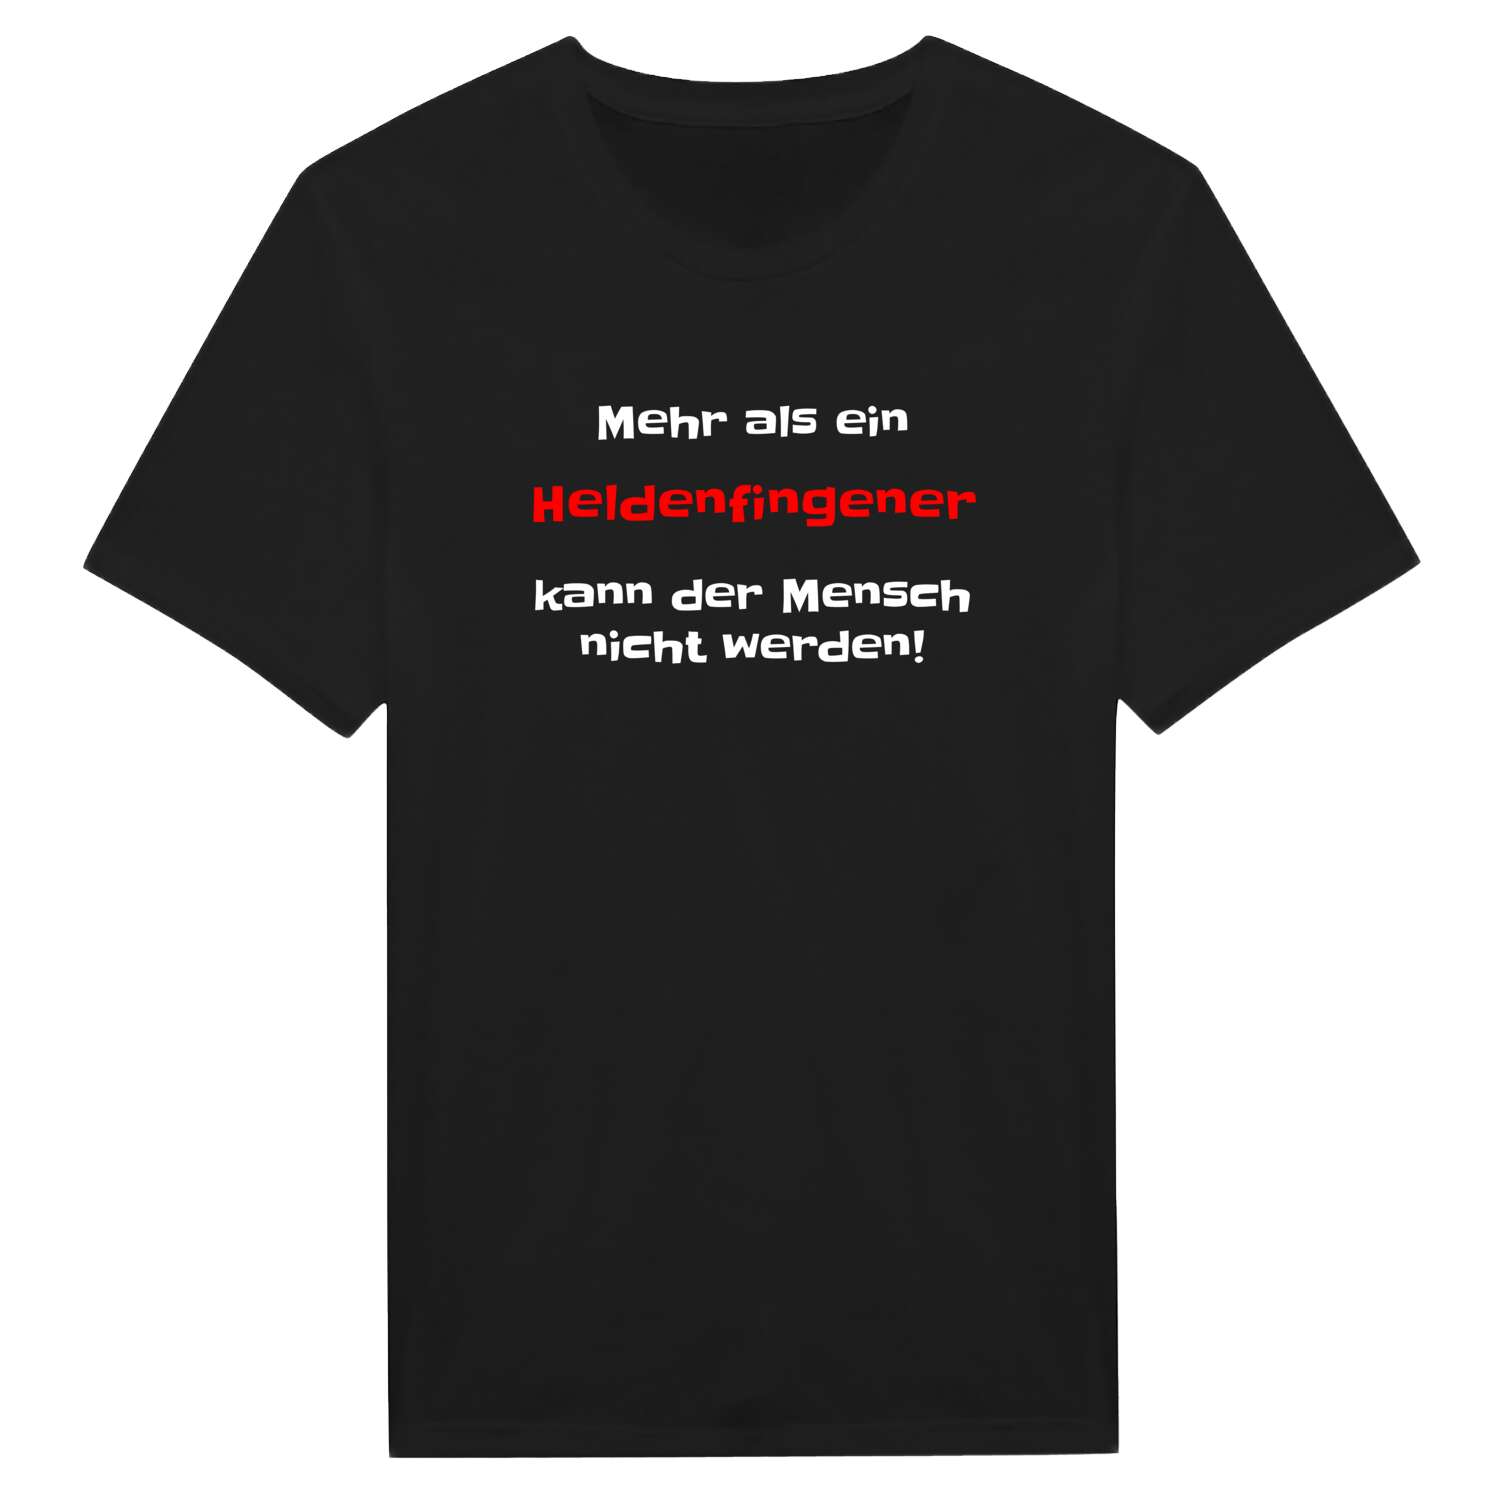 Heldenfingen T-Shirt »Mehr als ein«